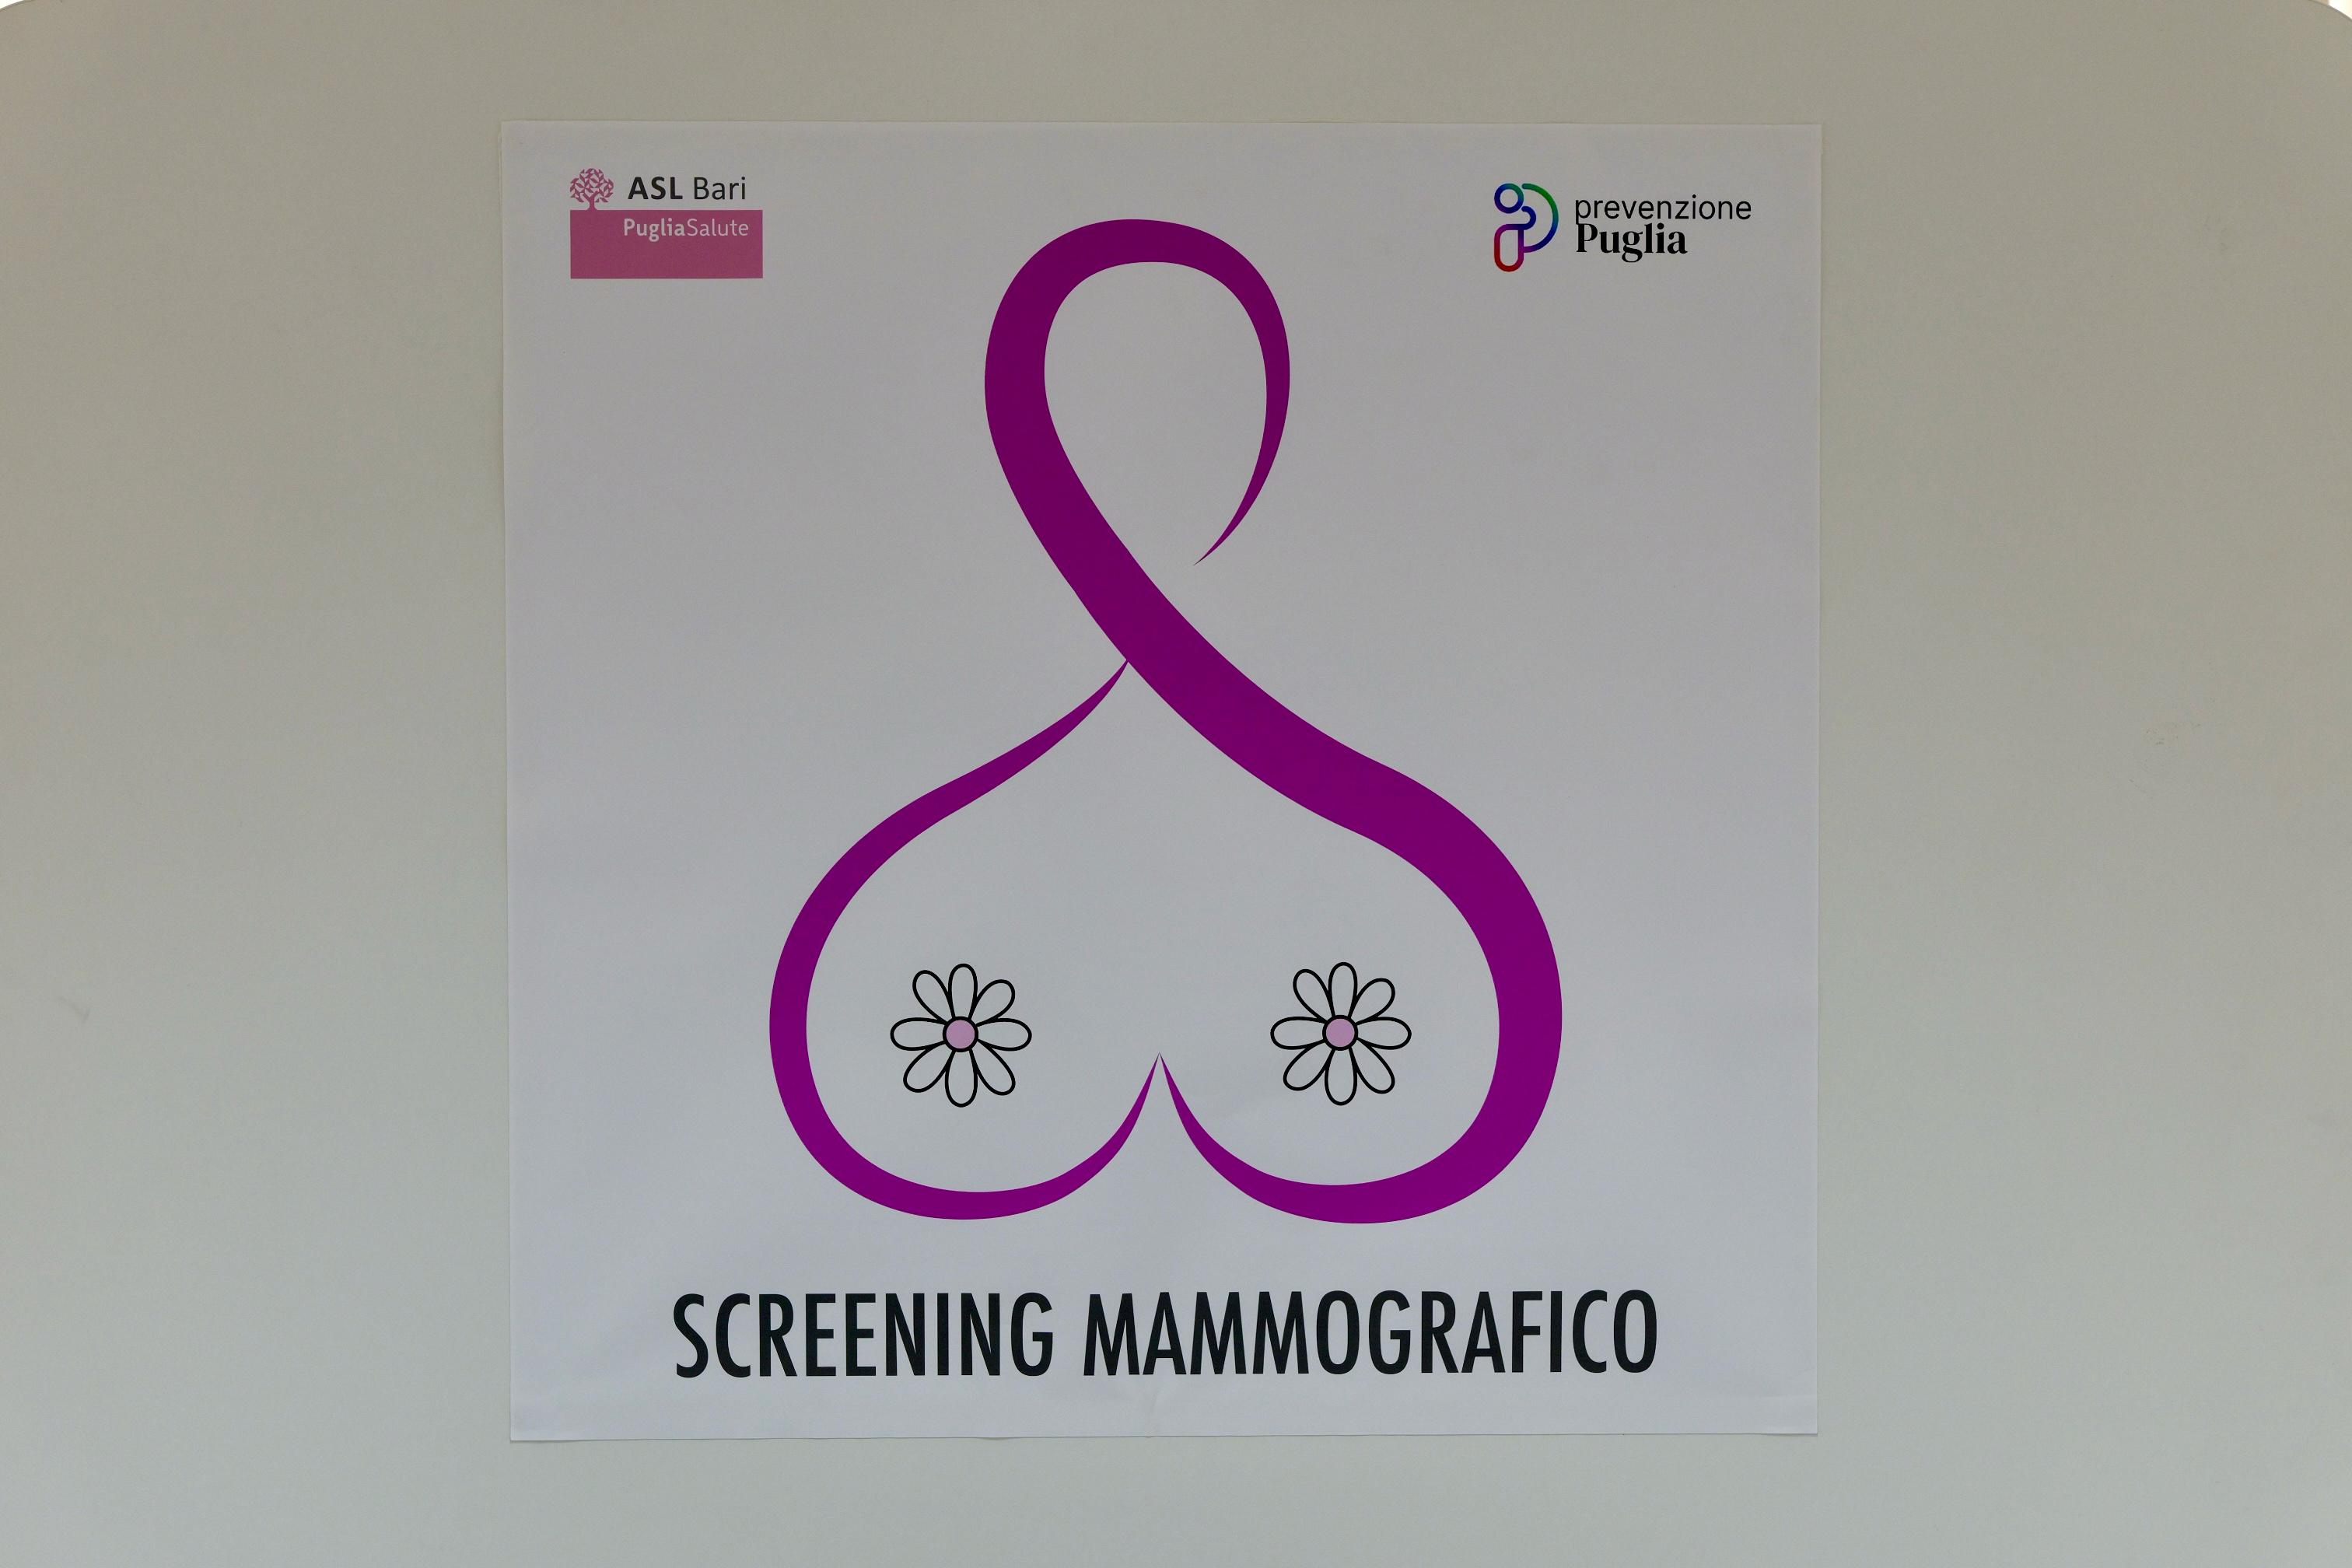 Galleria Un nuovo centro Screening con mammografo digitale 3D nel cuore di Bari: sarà a disposizione di 10mila donne residenti nei quartieri Madonnella, Libertà, Bari Murat e Città vecchia - Diapositiva 10 di 10